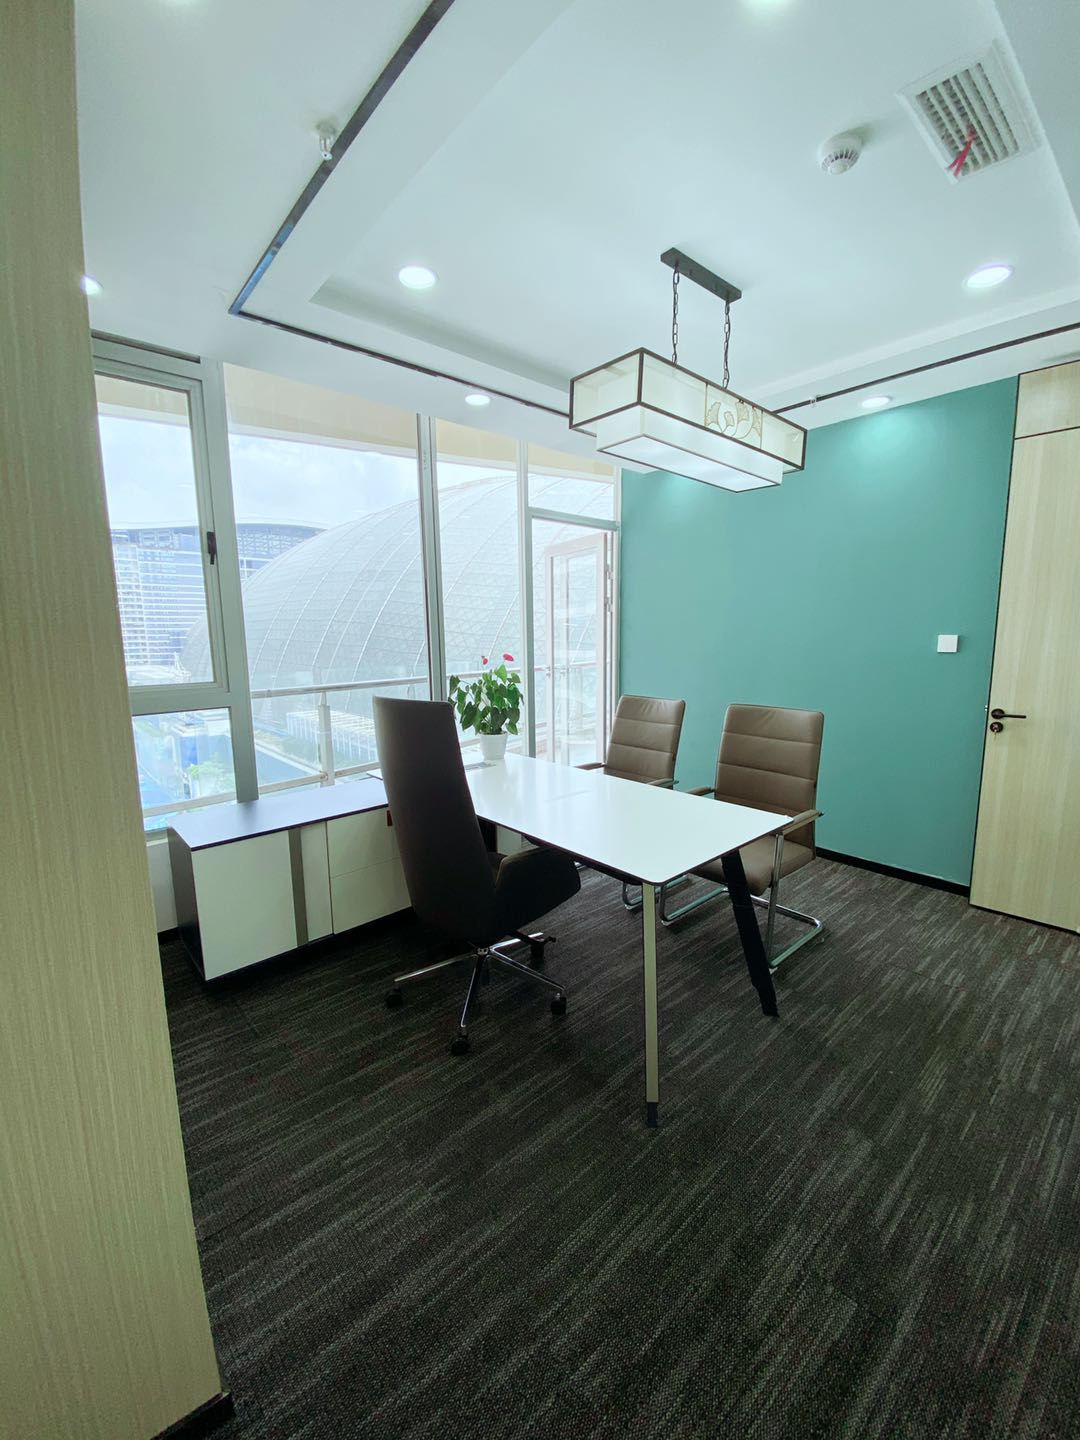 高新区新世纪环球中心精装小面积办公室 简约网红风格 含物业和空调费